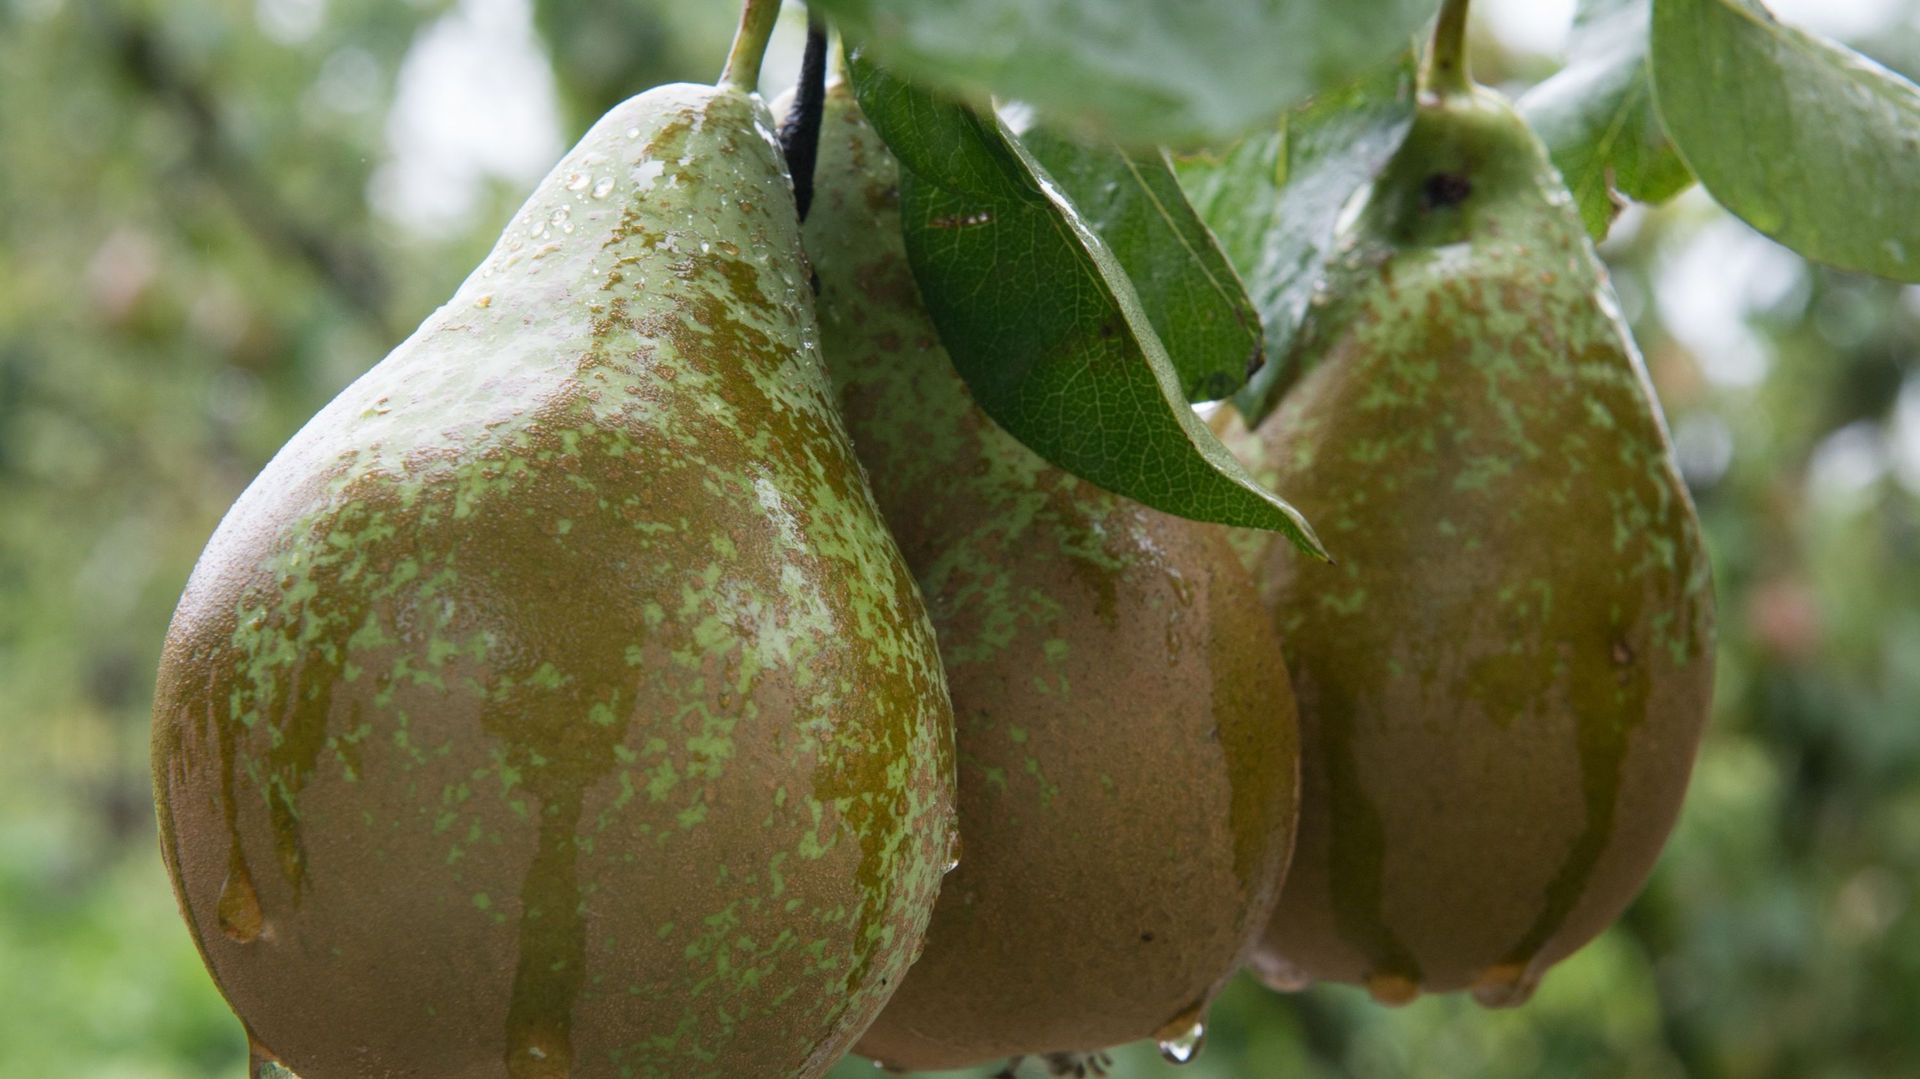 Réponse belge au boycott de la Russie: la vente de poires a doublé 